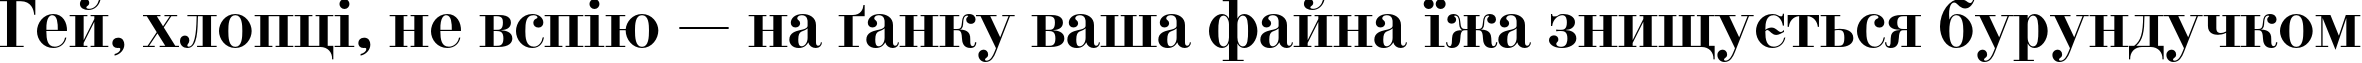 Пример написания шрифтом DidonaC текста на украинском